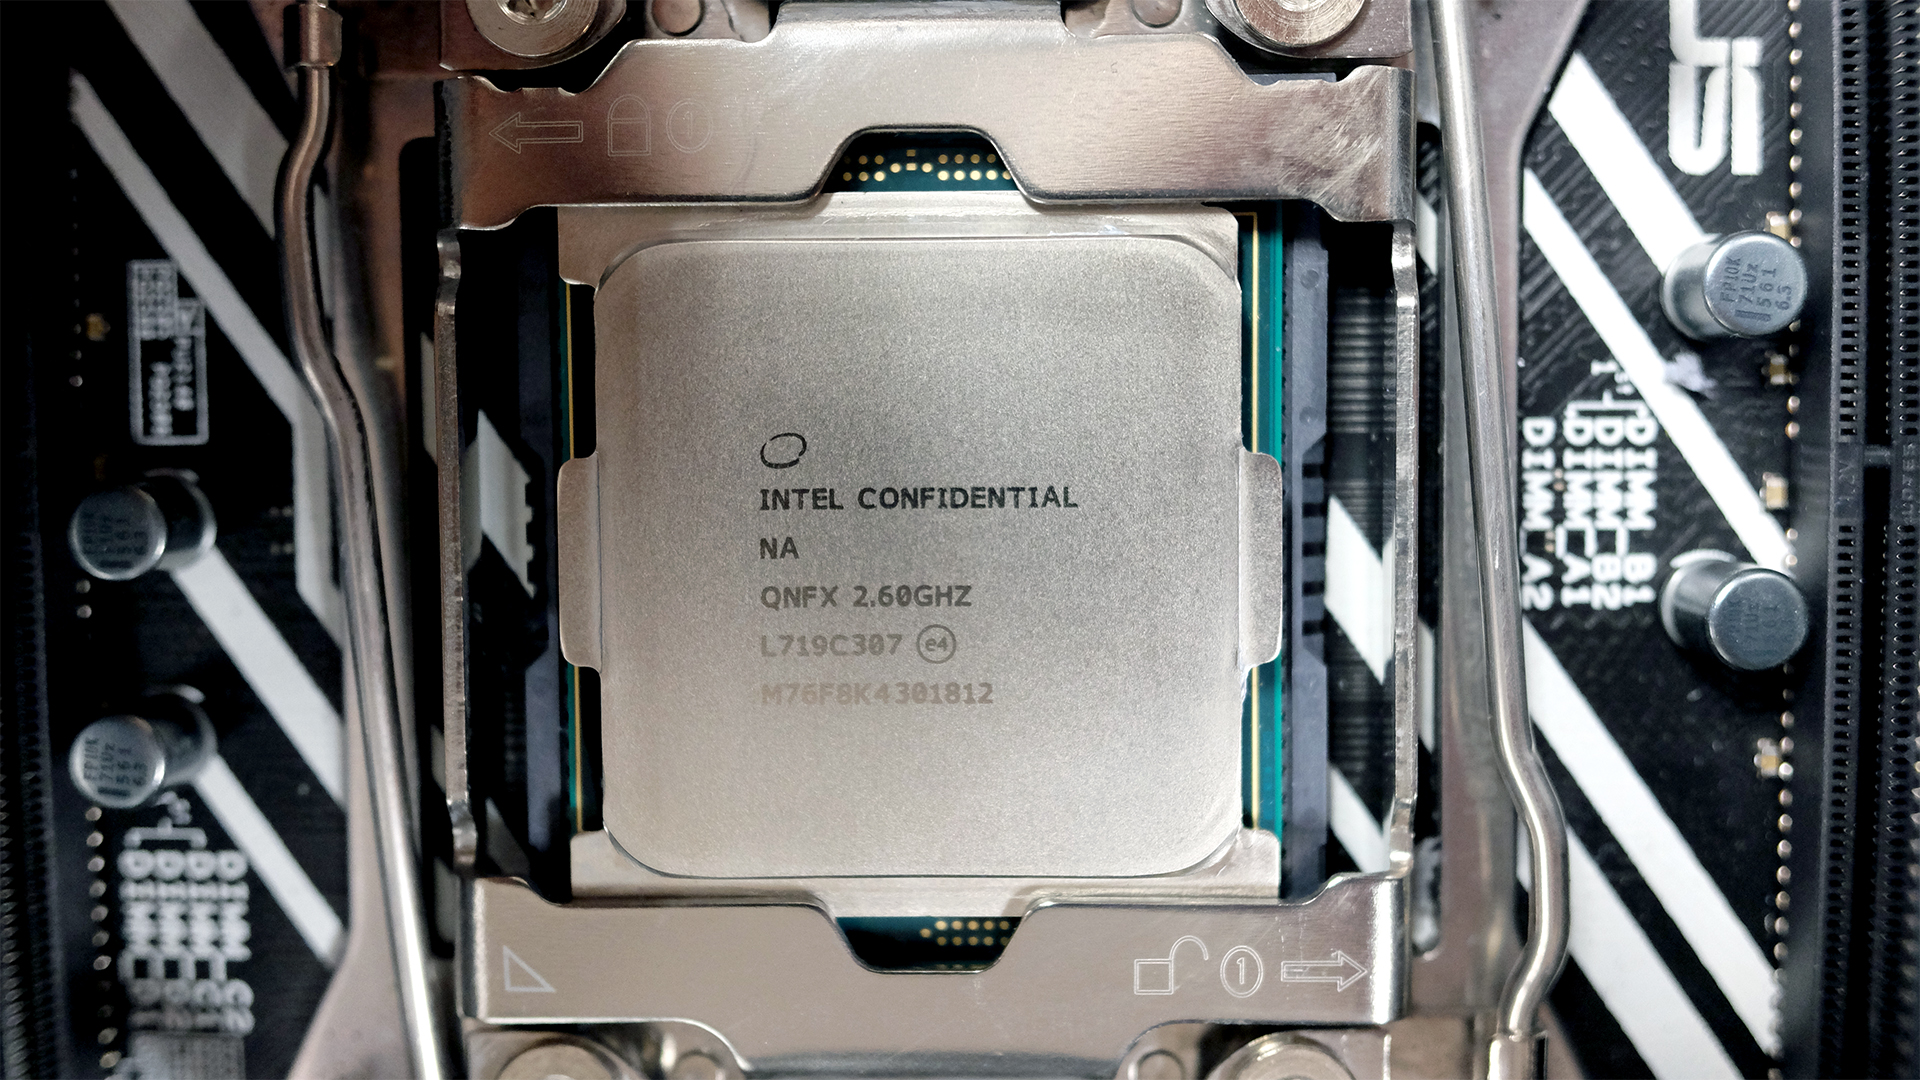 Intel Core i9-7980XE review